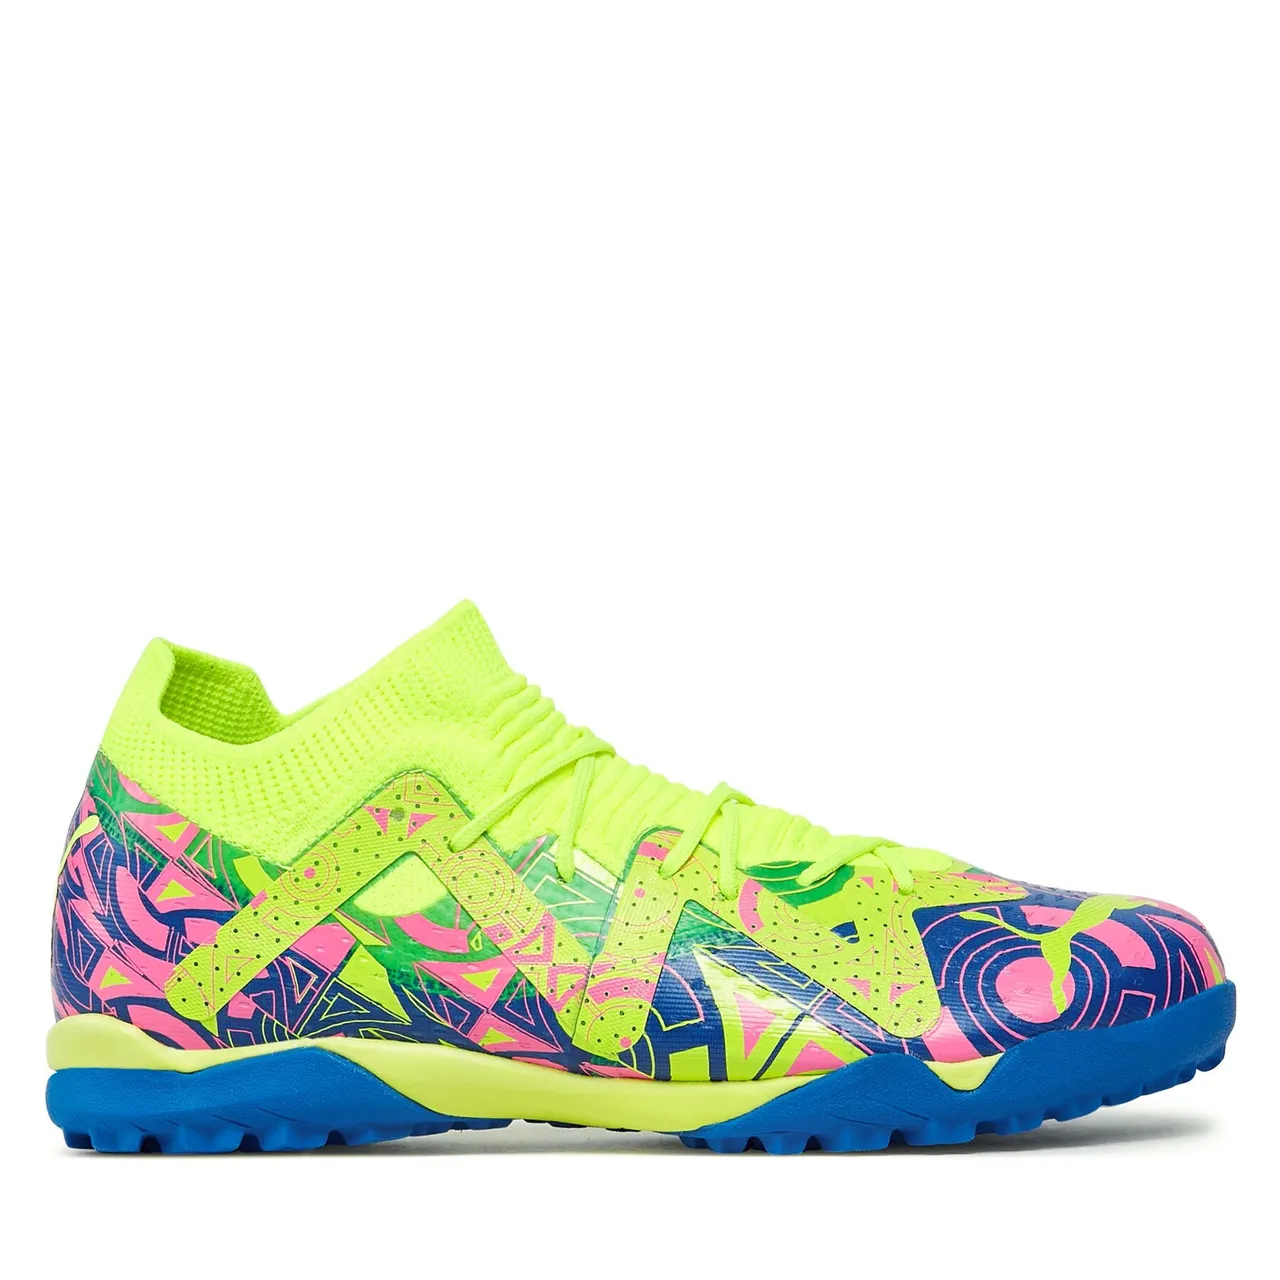 Schuhe Puma Future Match Tt Mid Jr 107550 01 Ultra Blue/Yellow Alert/Luminous Pink